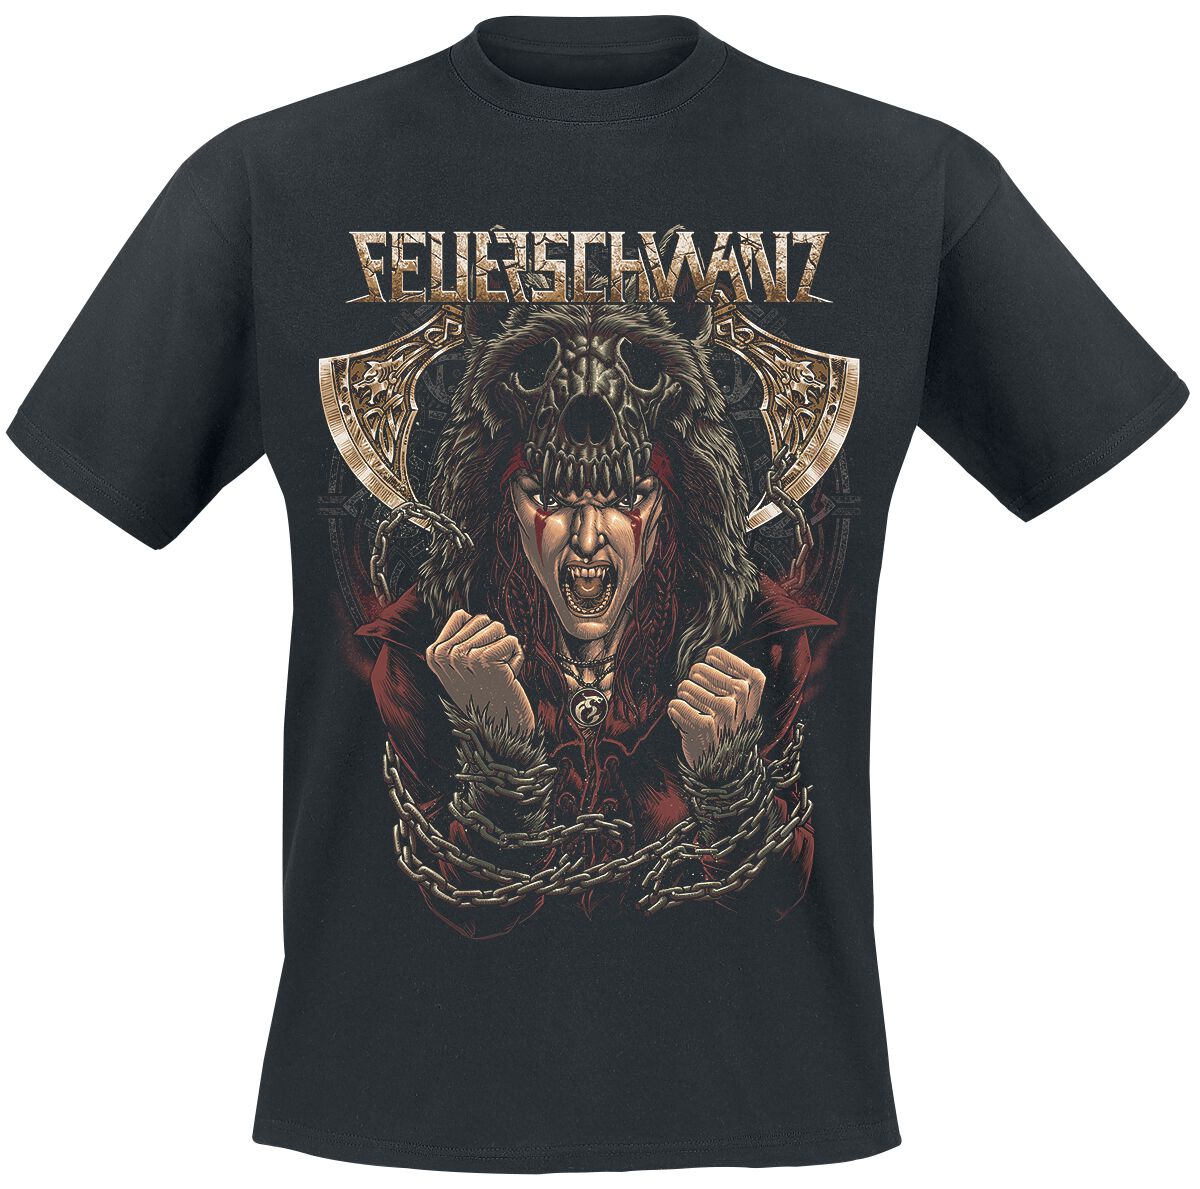 Feuerschwanz T-Shirt - L bis XL - für Männer - Größe XL - schwarz  - Lizenziertes Merchandise!